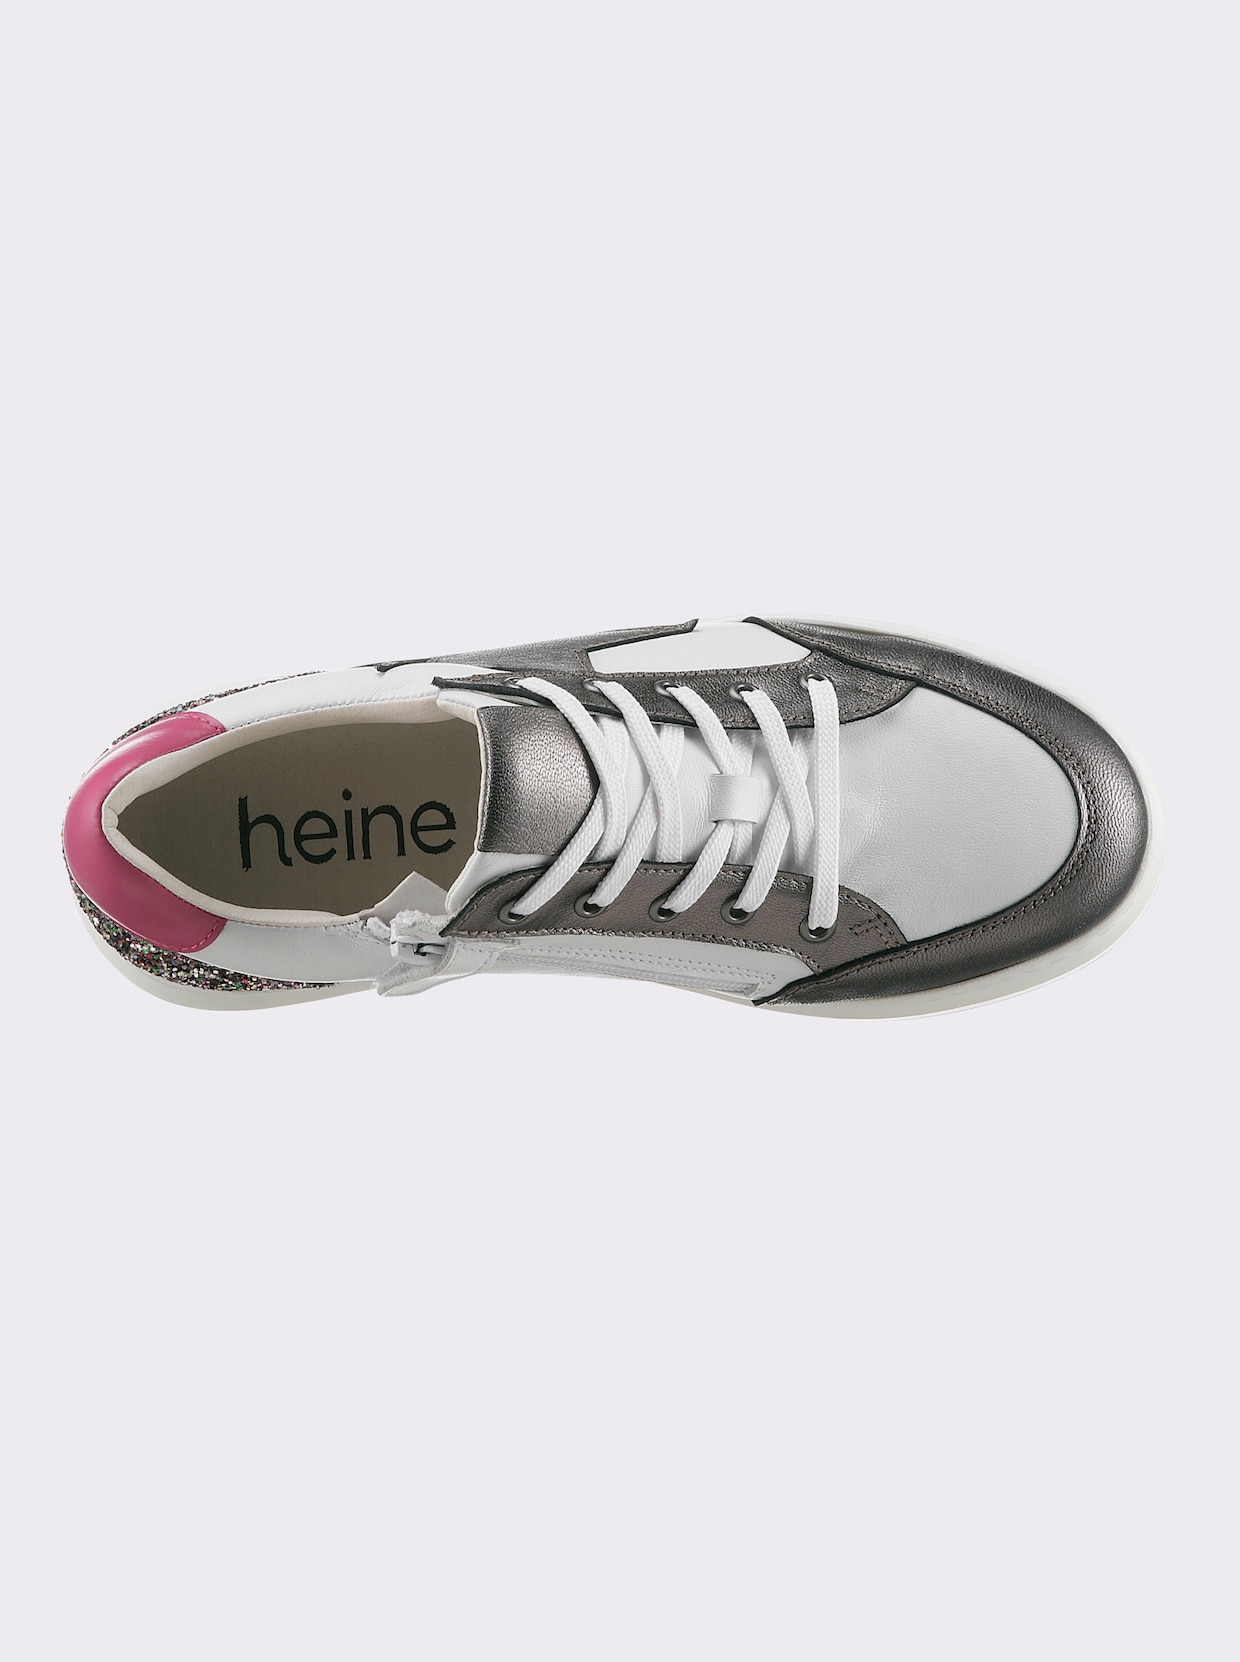 heine Sneaker - weiss-anthrazit-gemustert